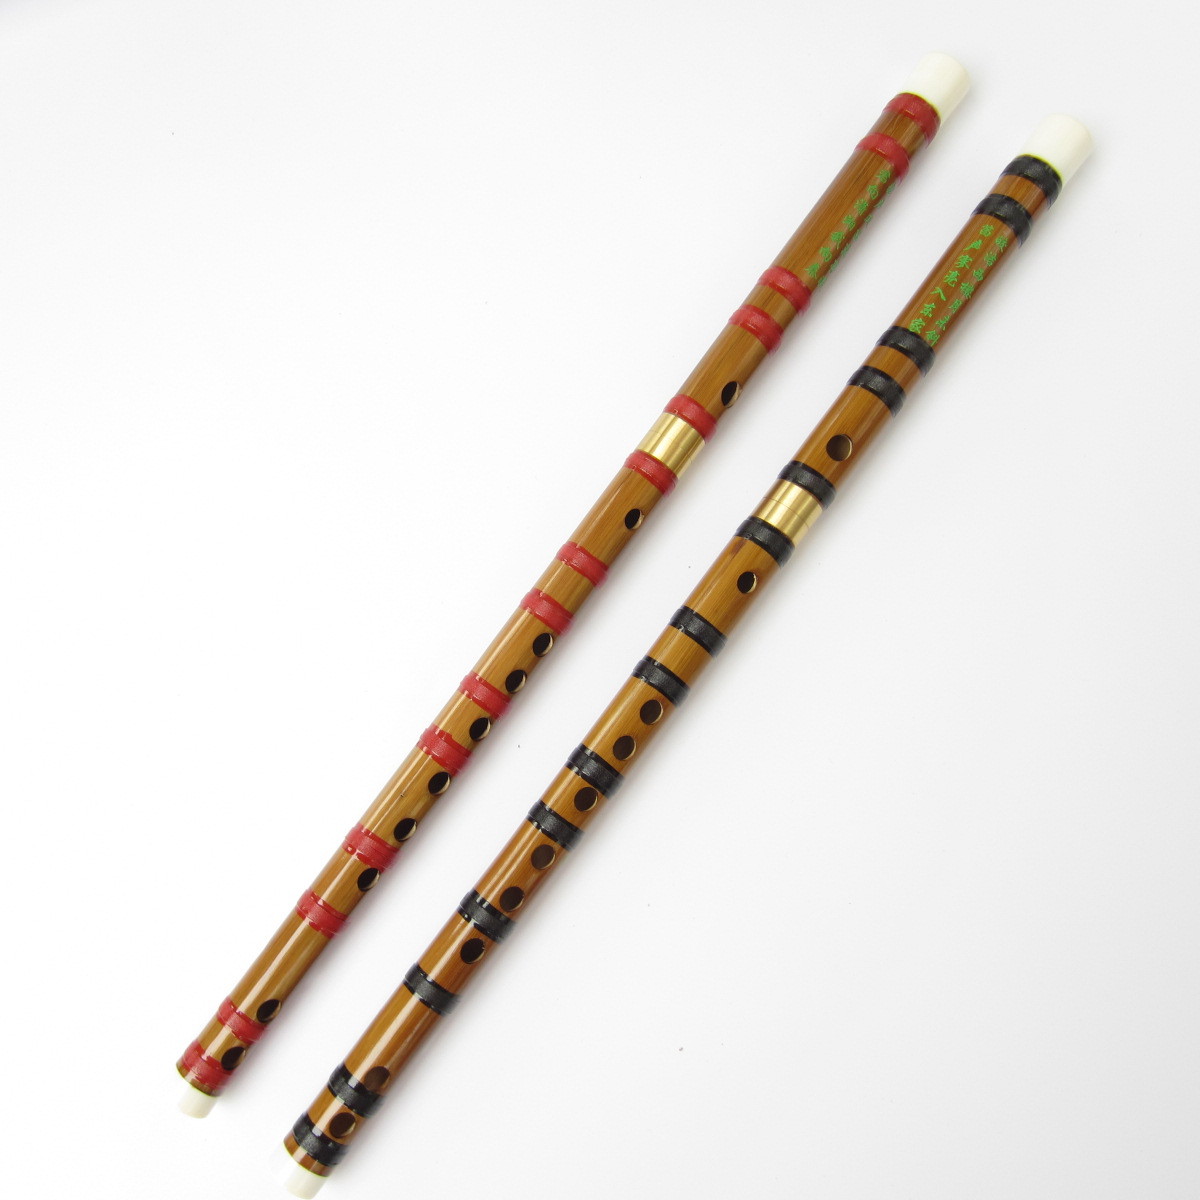 竹质六孔学生竖笛 长约24cm 乐器笛子萧哨笛乐器批发-阿里巴巴